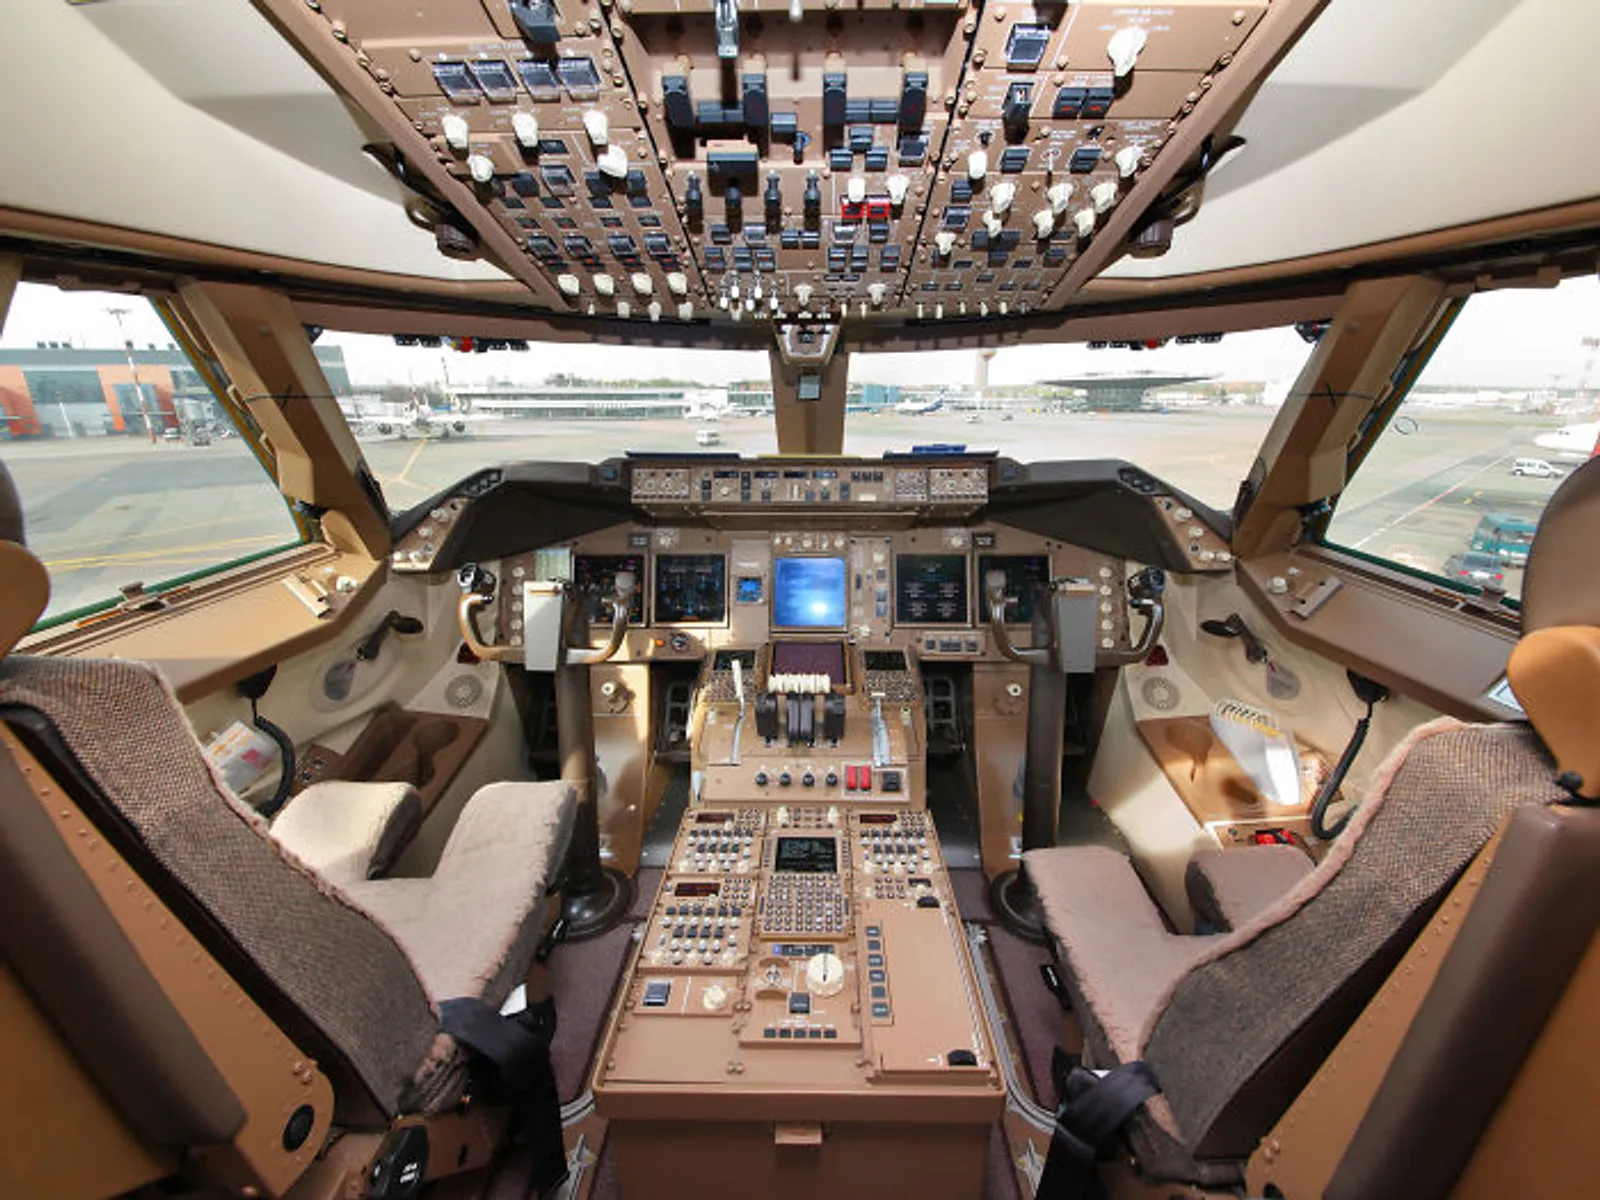 Mewah! Inilah 12 Foto Interior Pesawat Jet Pribadi Terbesar di Dunia